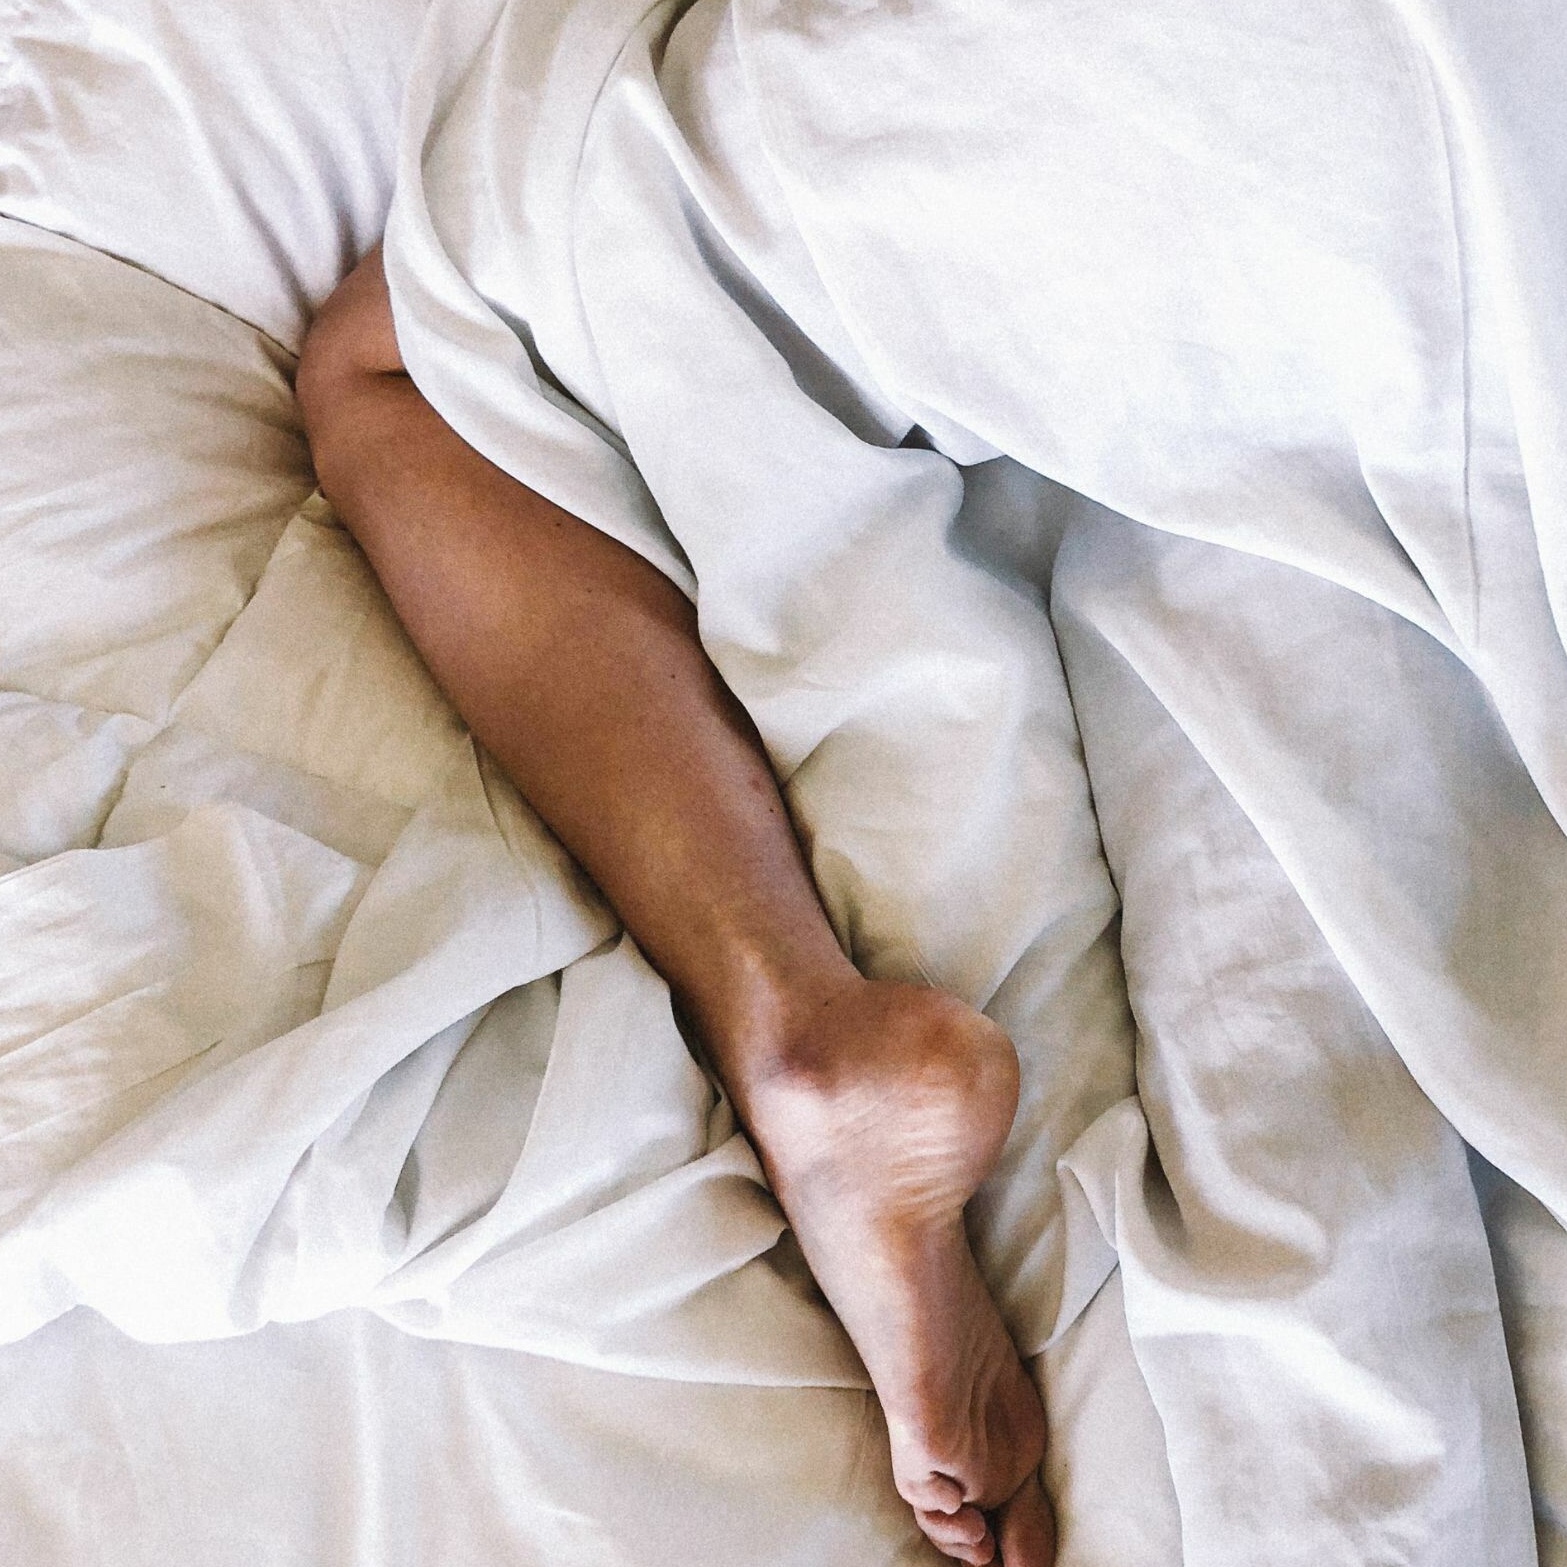 5 Expert Tips for Better Sleep If You Sleep Hot